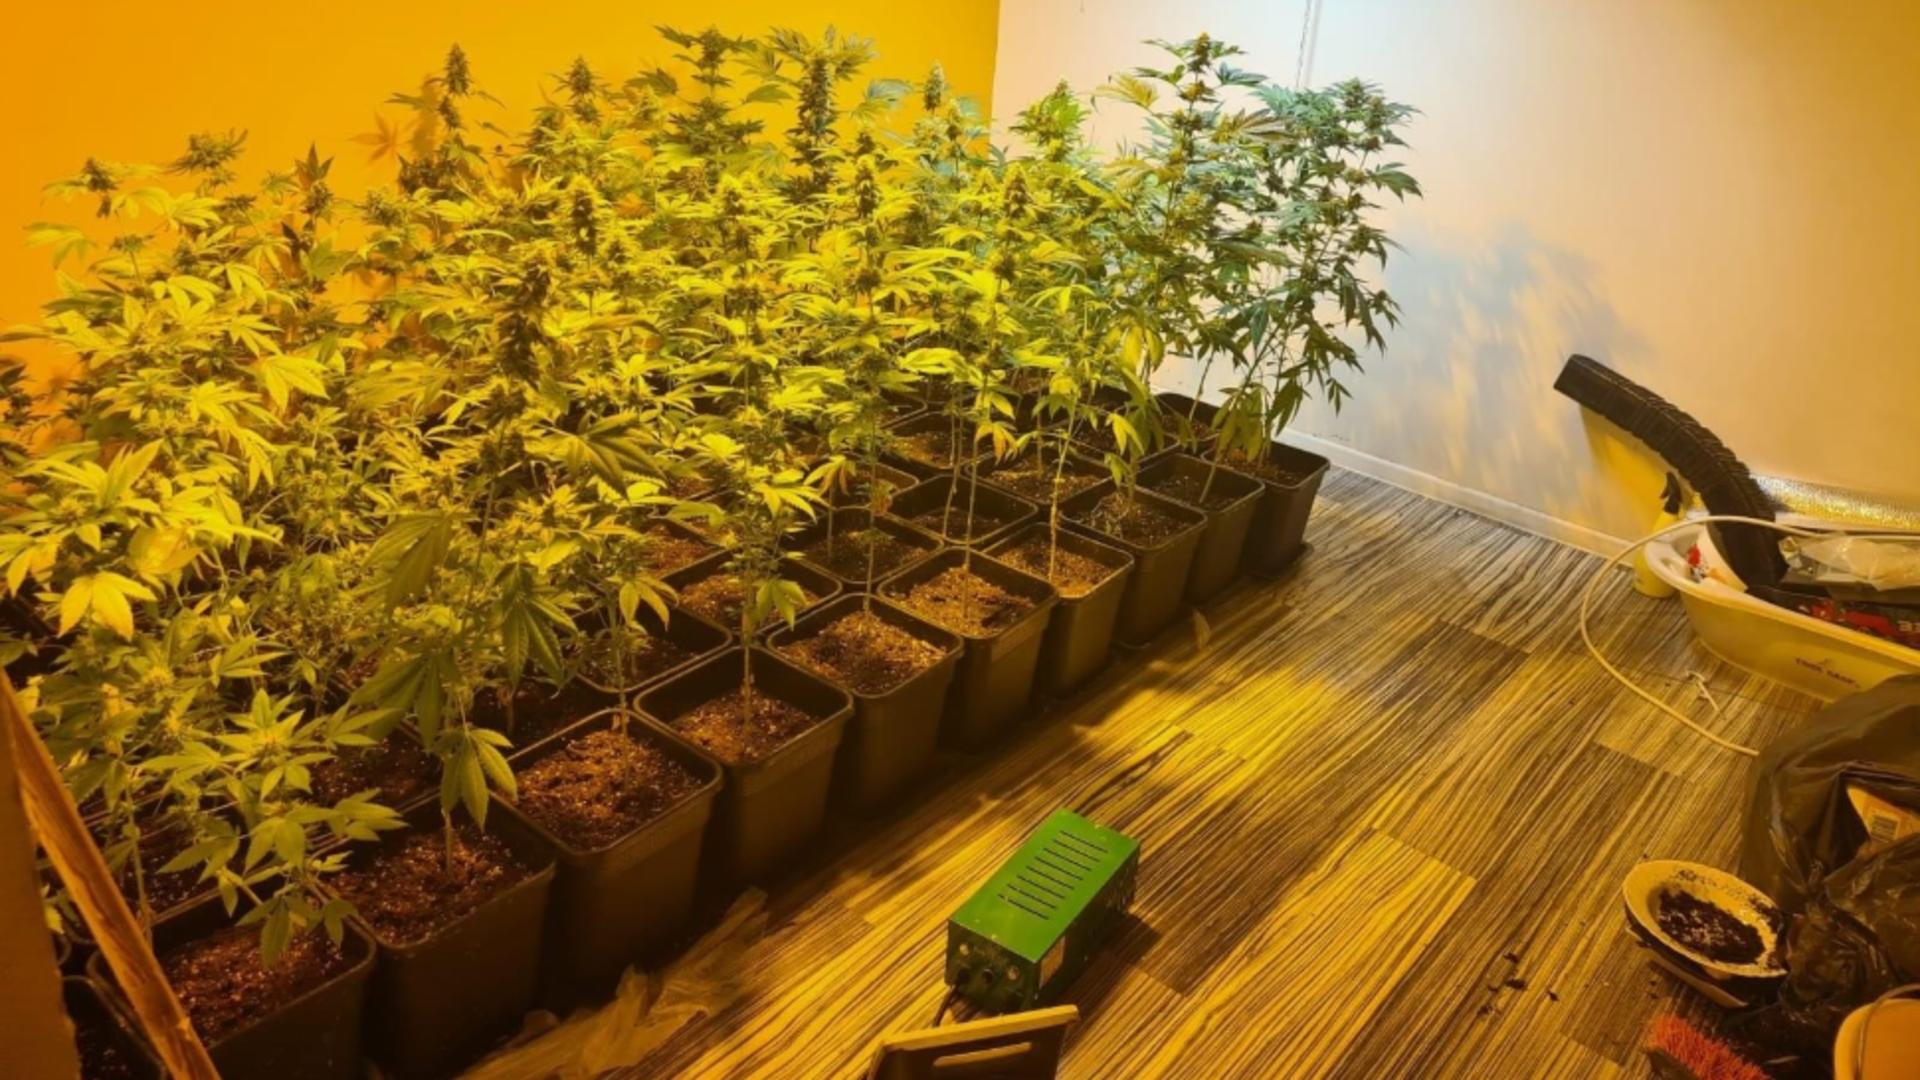 Cultură de canabis, la Sintești, Ilfov. Peste 100 de plante și ustensile pentru fabricat droguri, găsite la un cetățean în casă